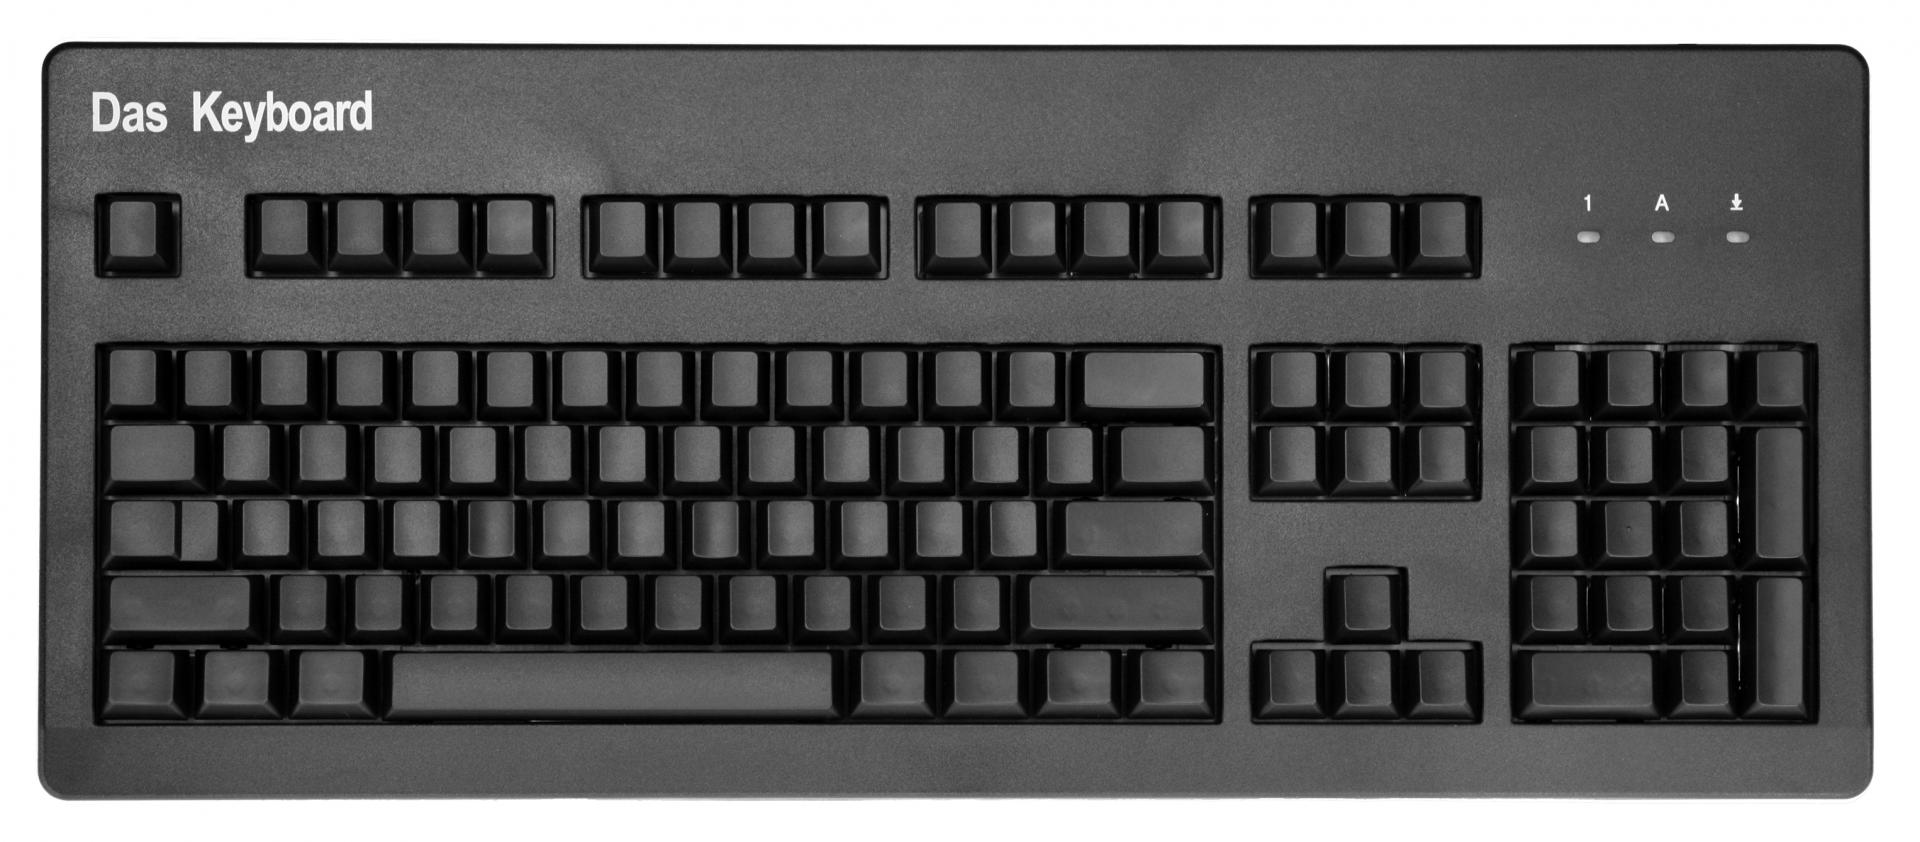 نام: das keyboard.jpg نمایش: 45 اندازه: 164.7 کیلو بایت